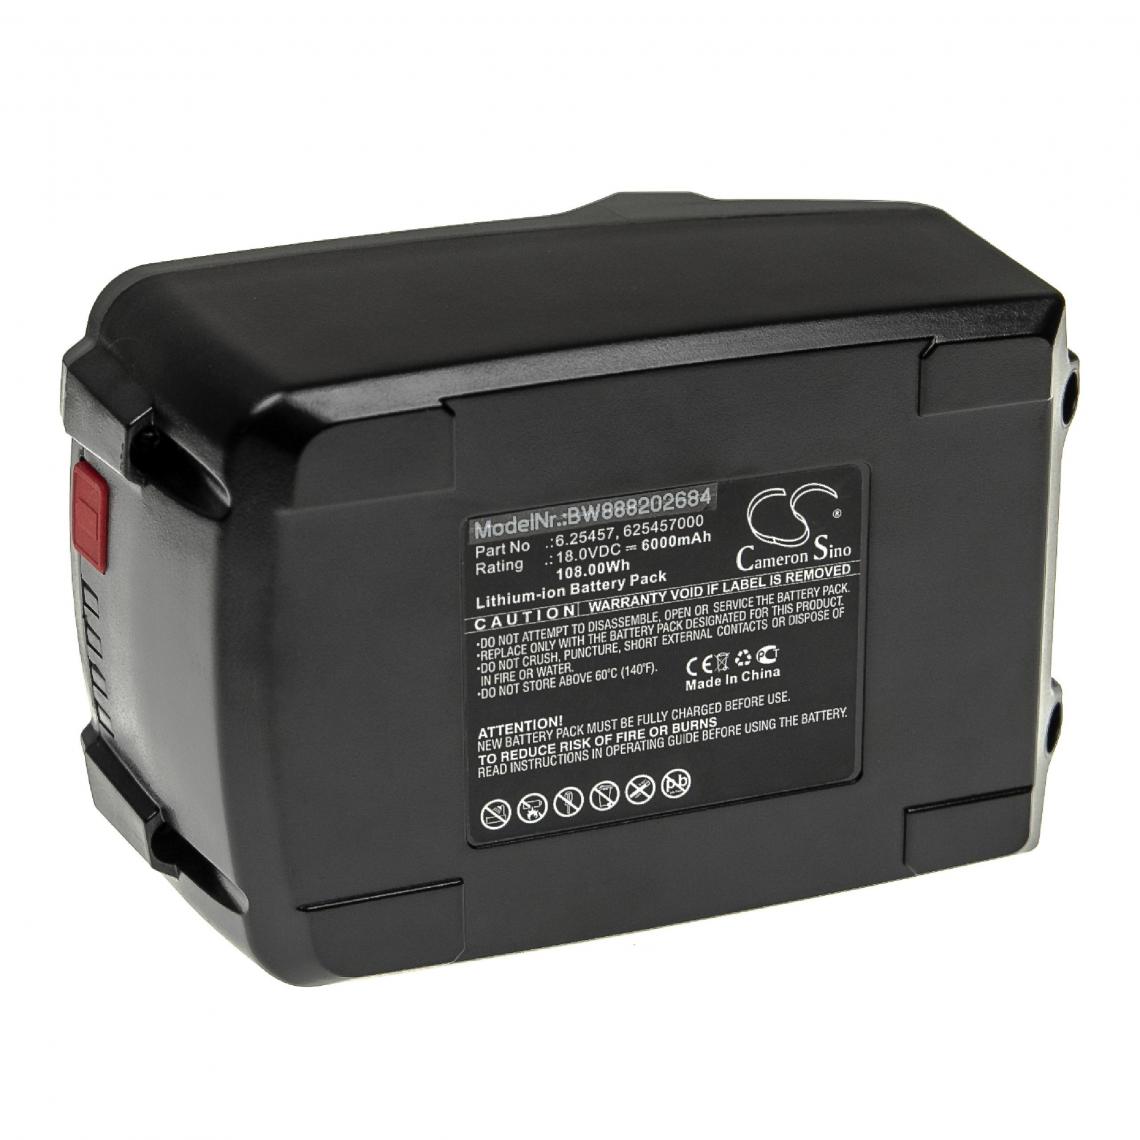 Vhbw - vhbw Batterie compatible avec Metabo AV 18, AV 18 606176850, BE 18 LTX 6 outil électrique (6000mAh Li-ion 18 V) - Autre appareil de mesure